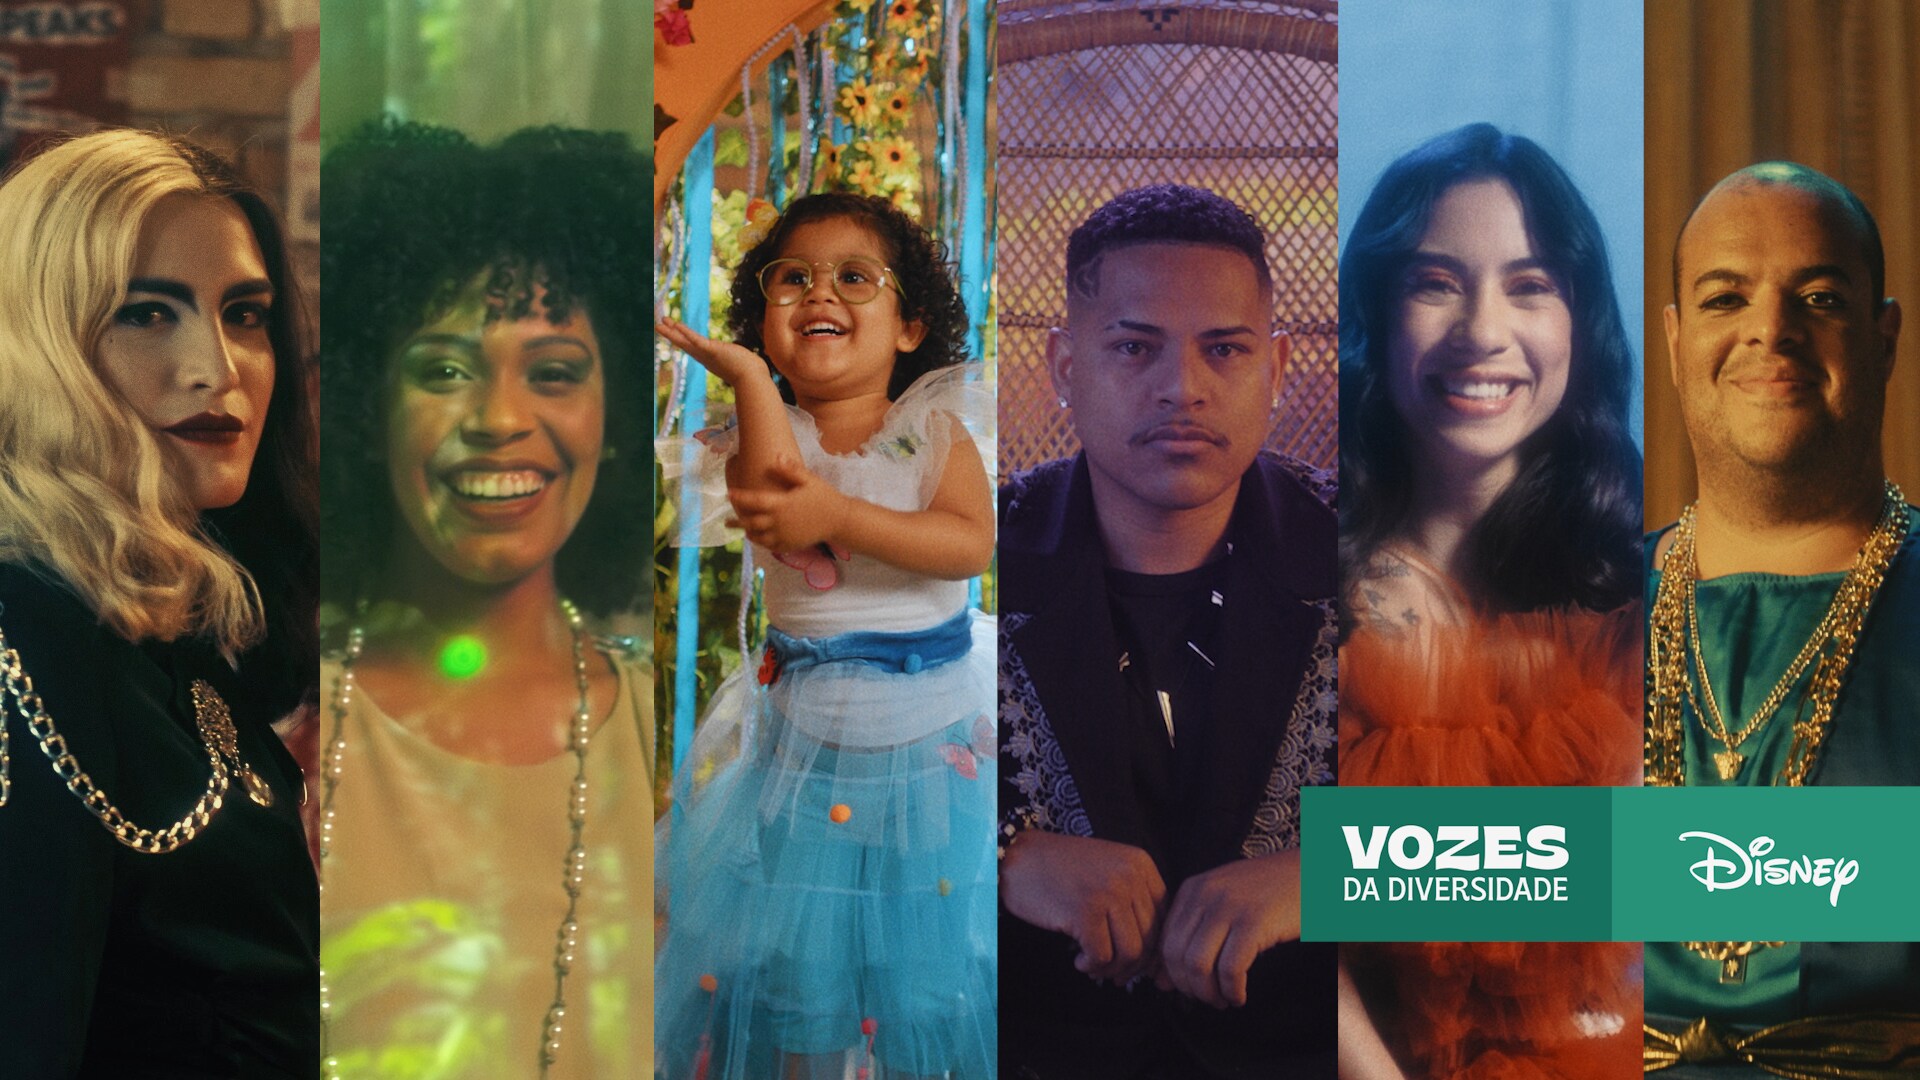 Disney Brasil lança série documental “Vozes da Diversidade”